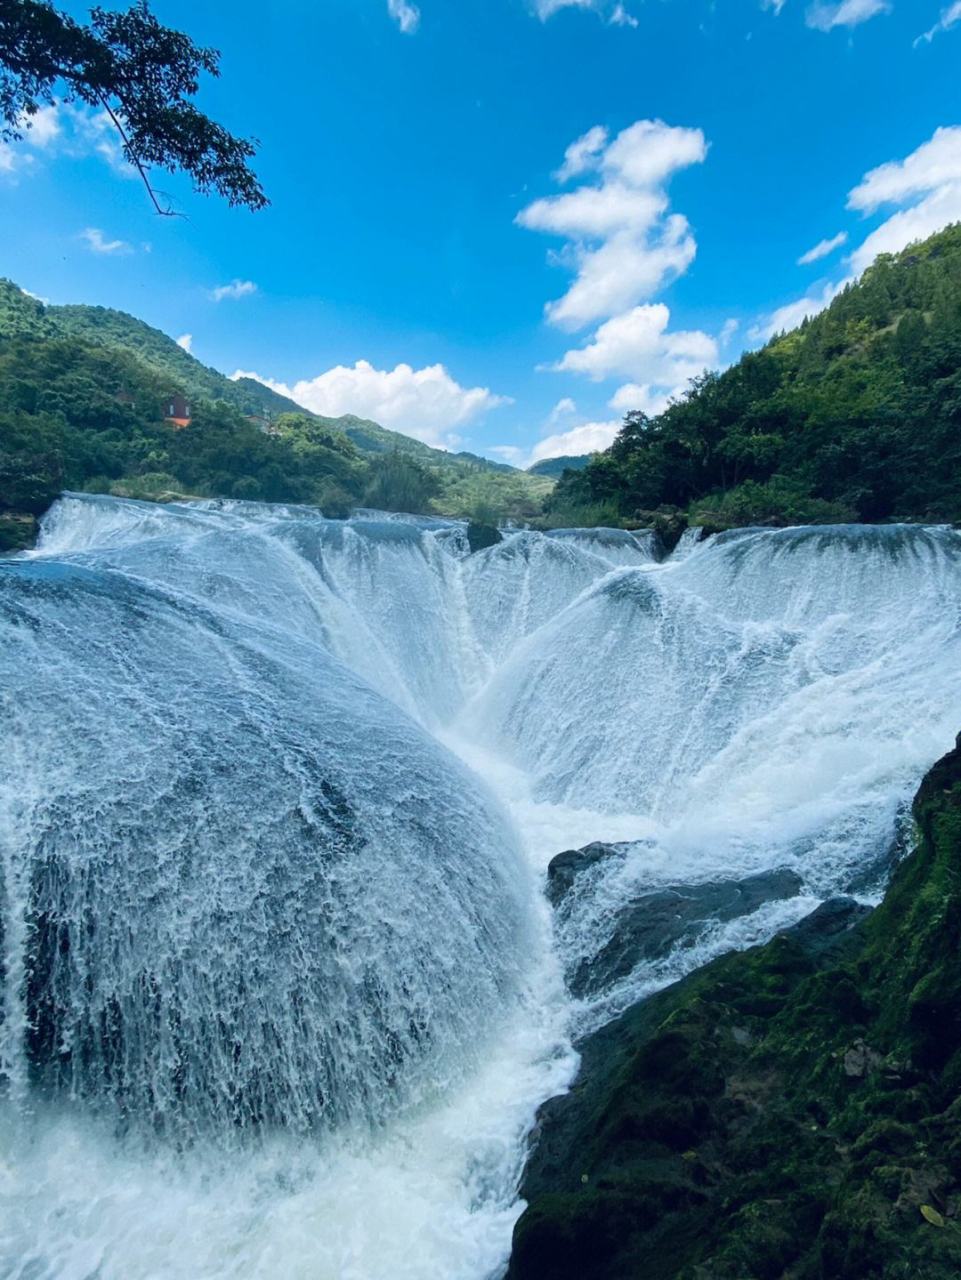 黄果树瀑布,中国最大的瀑布,也是世界著名大瀑布之一,以其雄伟壮观的